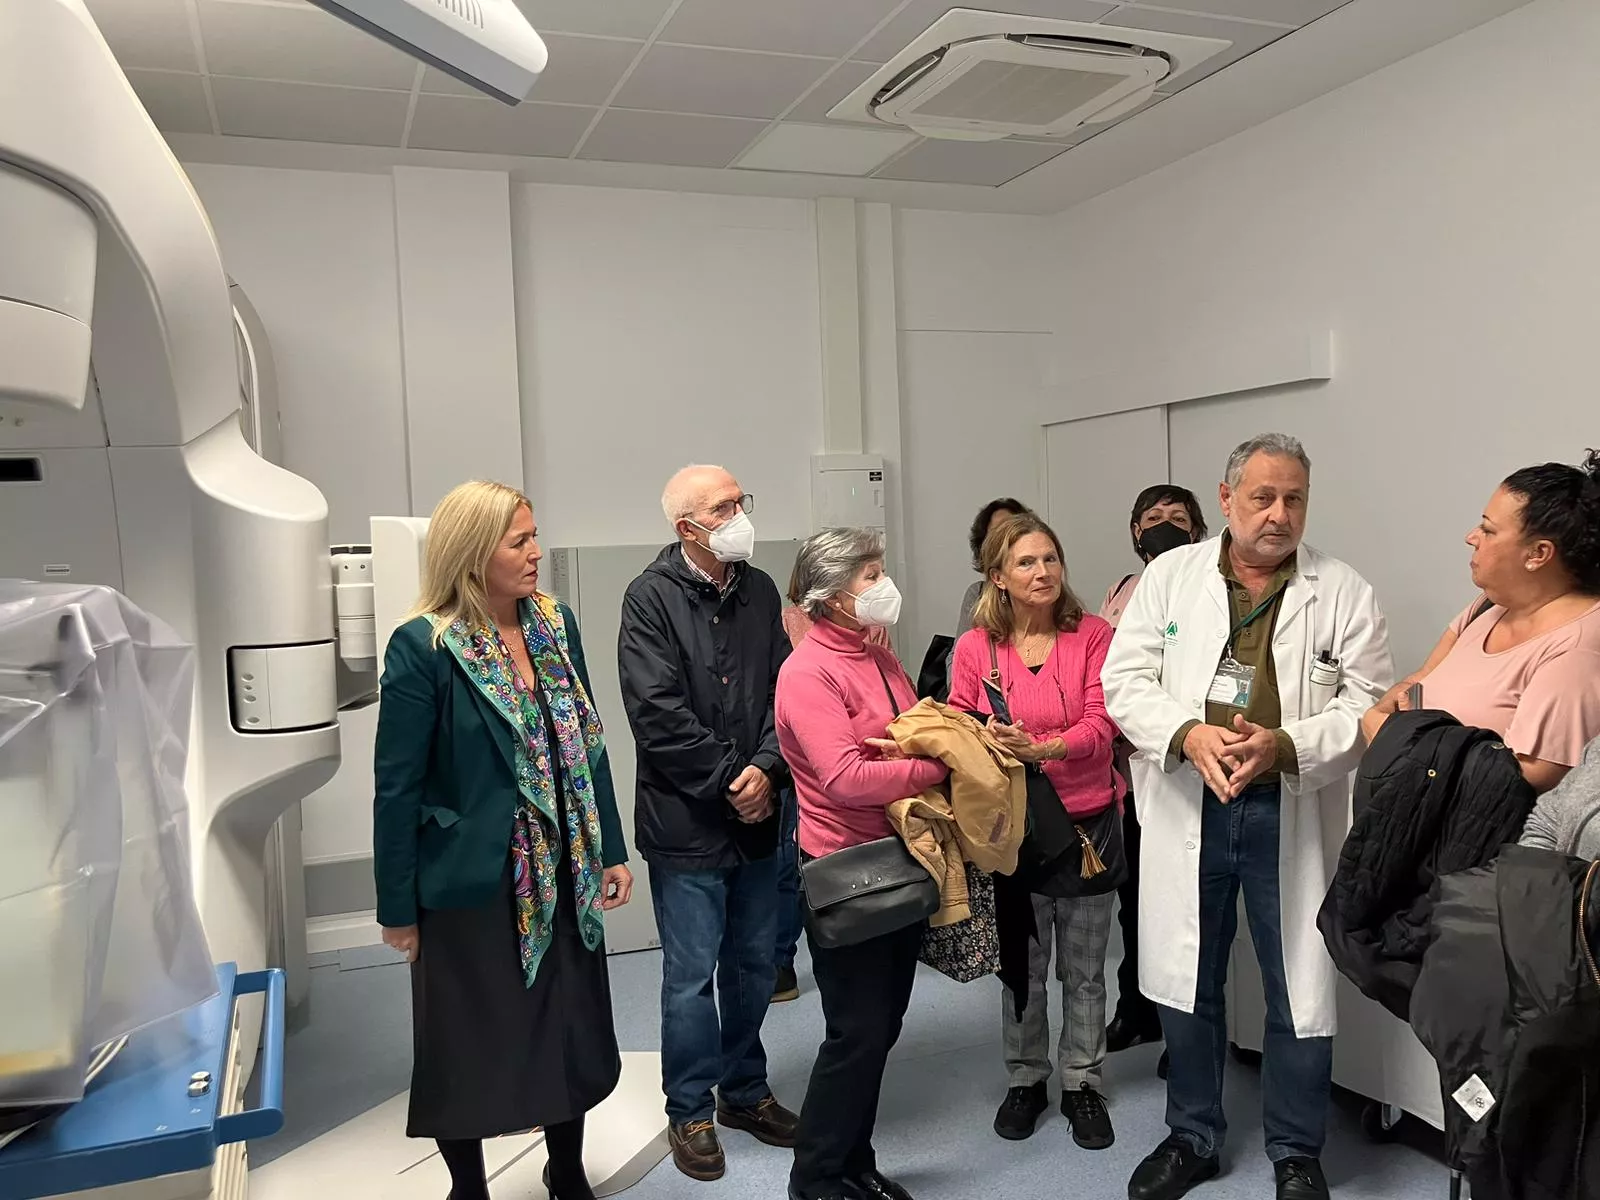 La visita junto a los equipos de radioterapia del Hospital Puerta del Mar.